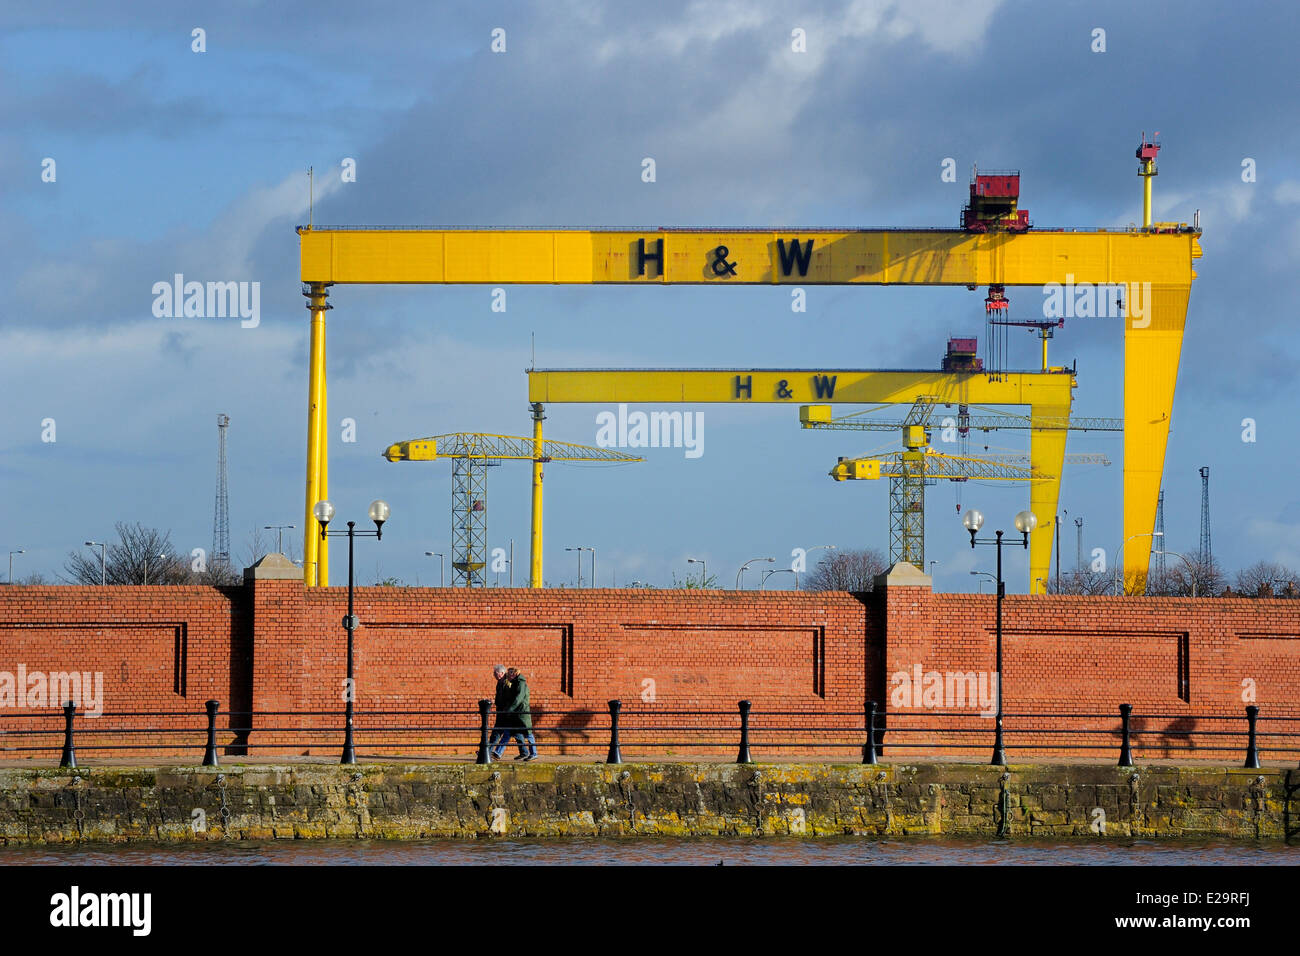 Royaume-uni, Irlande du Nord, Belfast, Queen's Island, Harland and Wolff Heavy Industries spécialisé dans la construction navale Banque D'Images